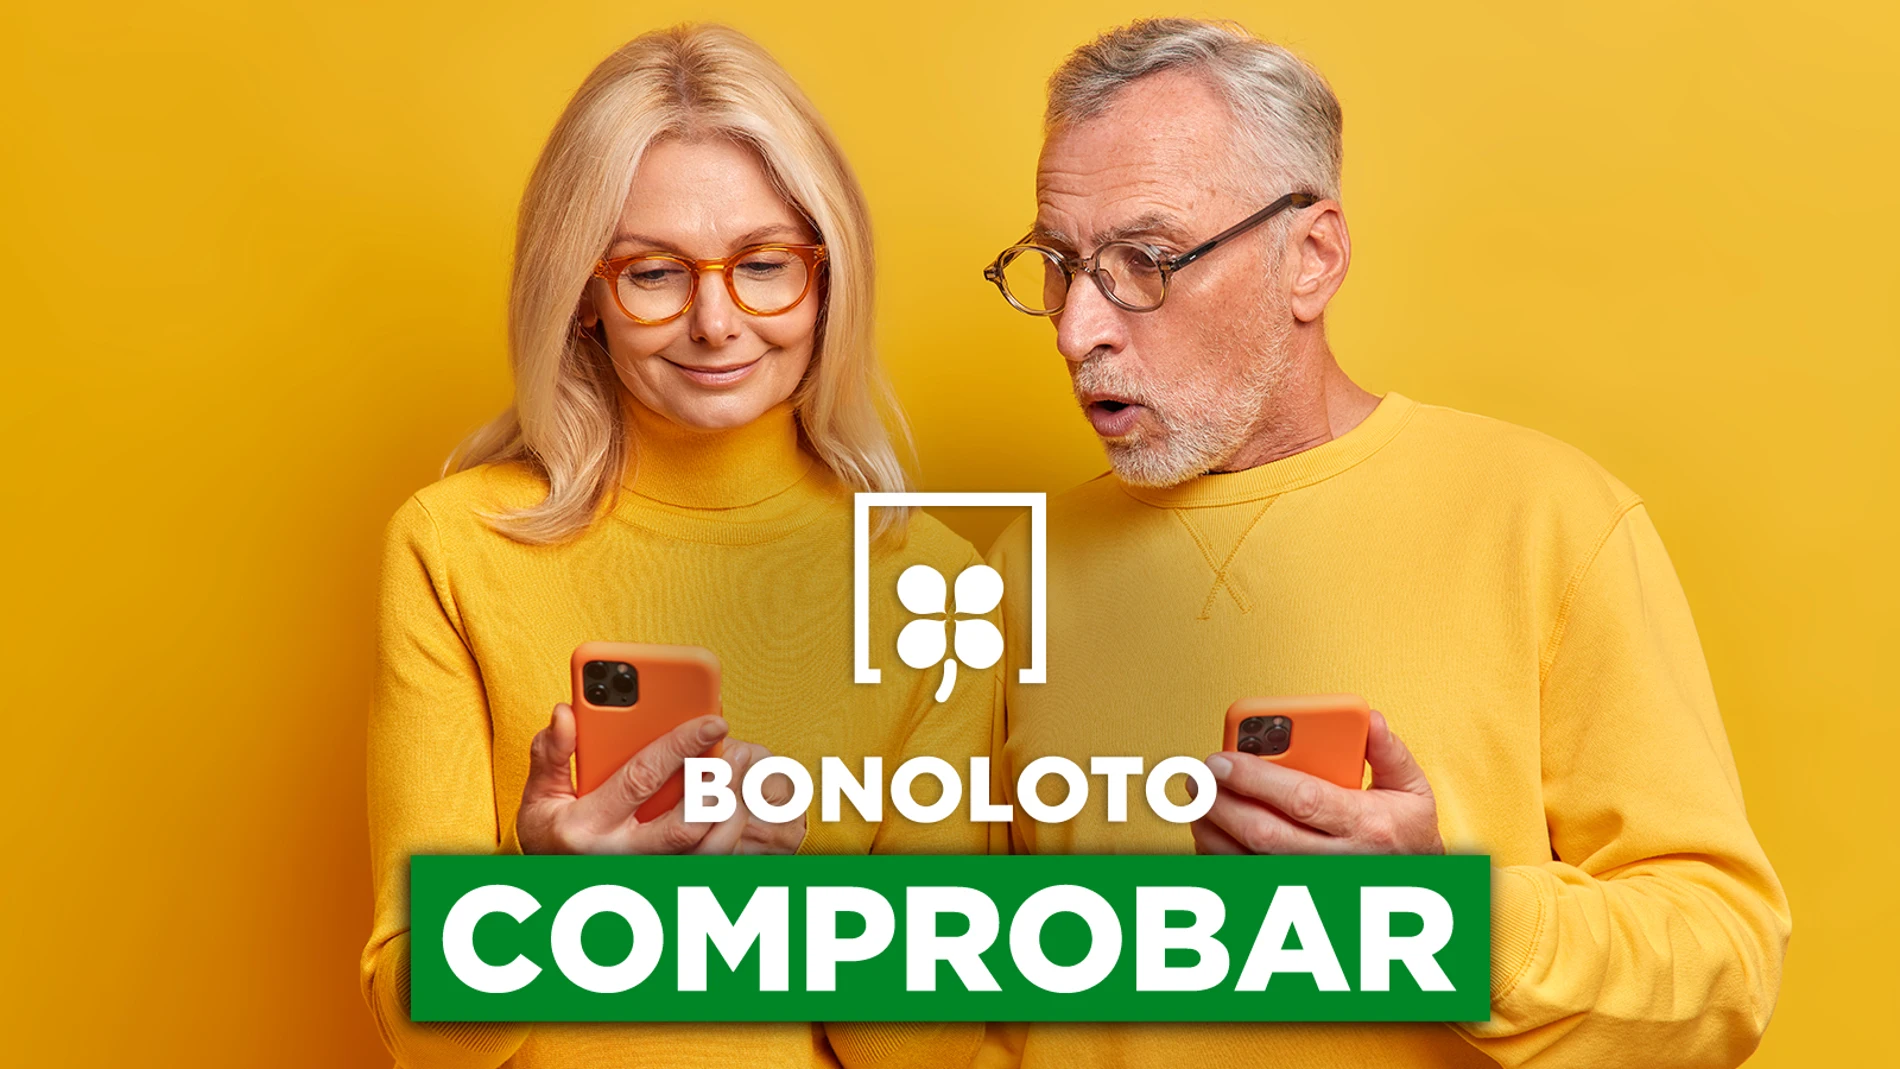 Bonoloto: comprobar hoy, viernes 2 de septiembre de 2022